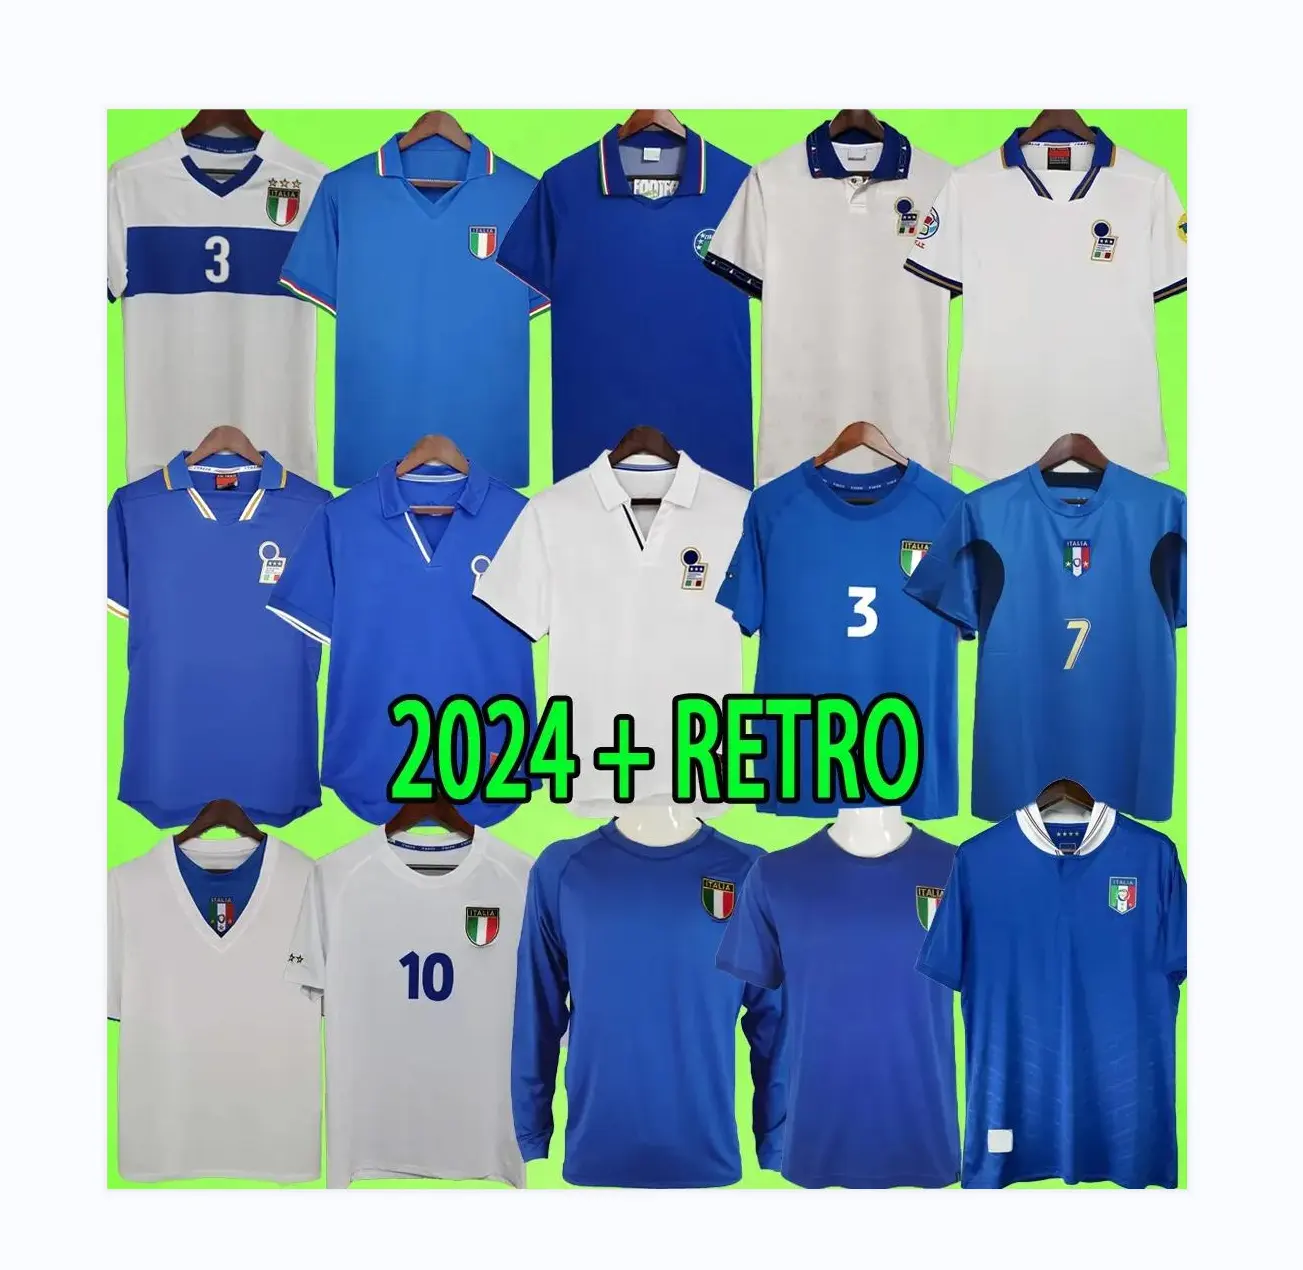 Camisa retrô italiana de futebol, uniforme masculino italiano, kit retrô de 1979 1982 1988 1990 1994 1996 1998 2000 2002 2004 2006 2012